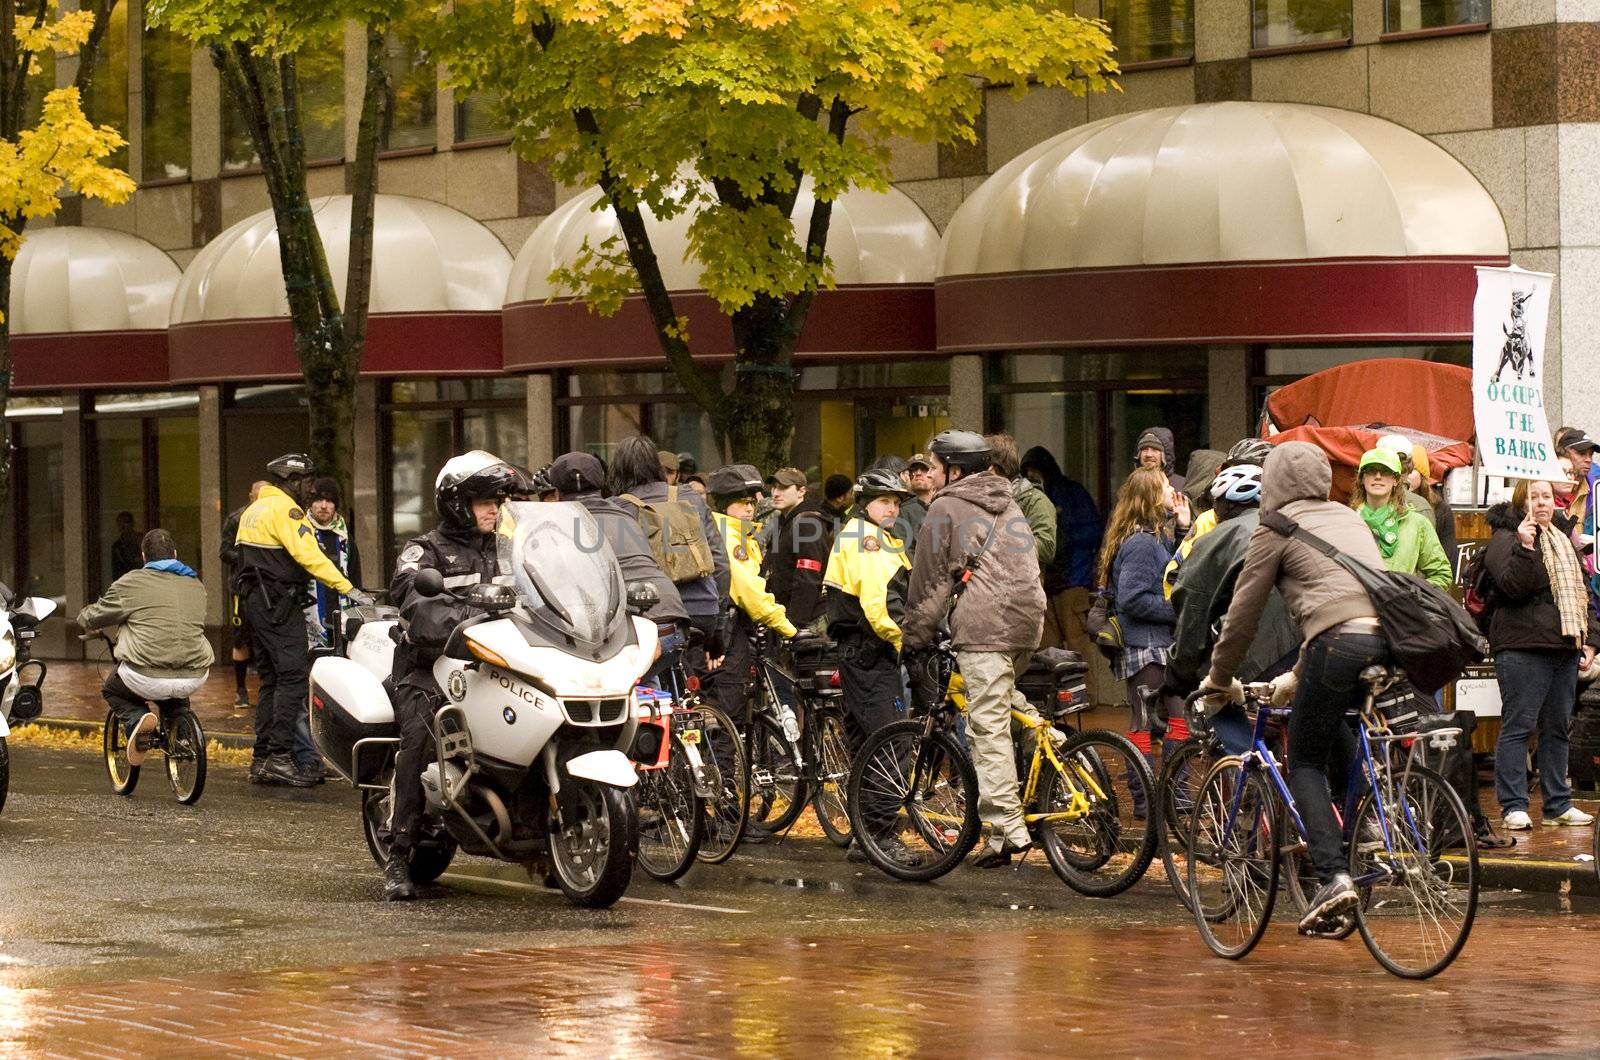 The Occupy Protestors in Portland, Oregon